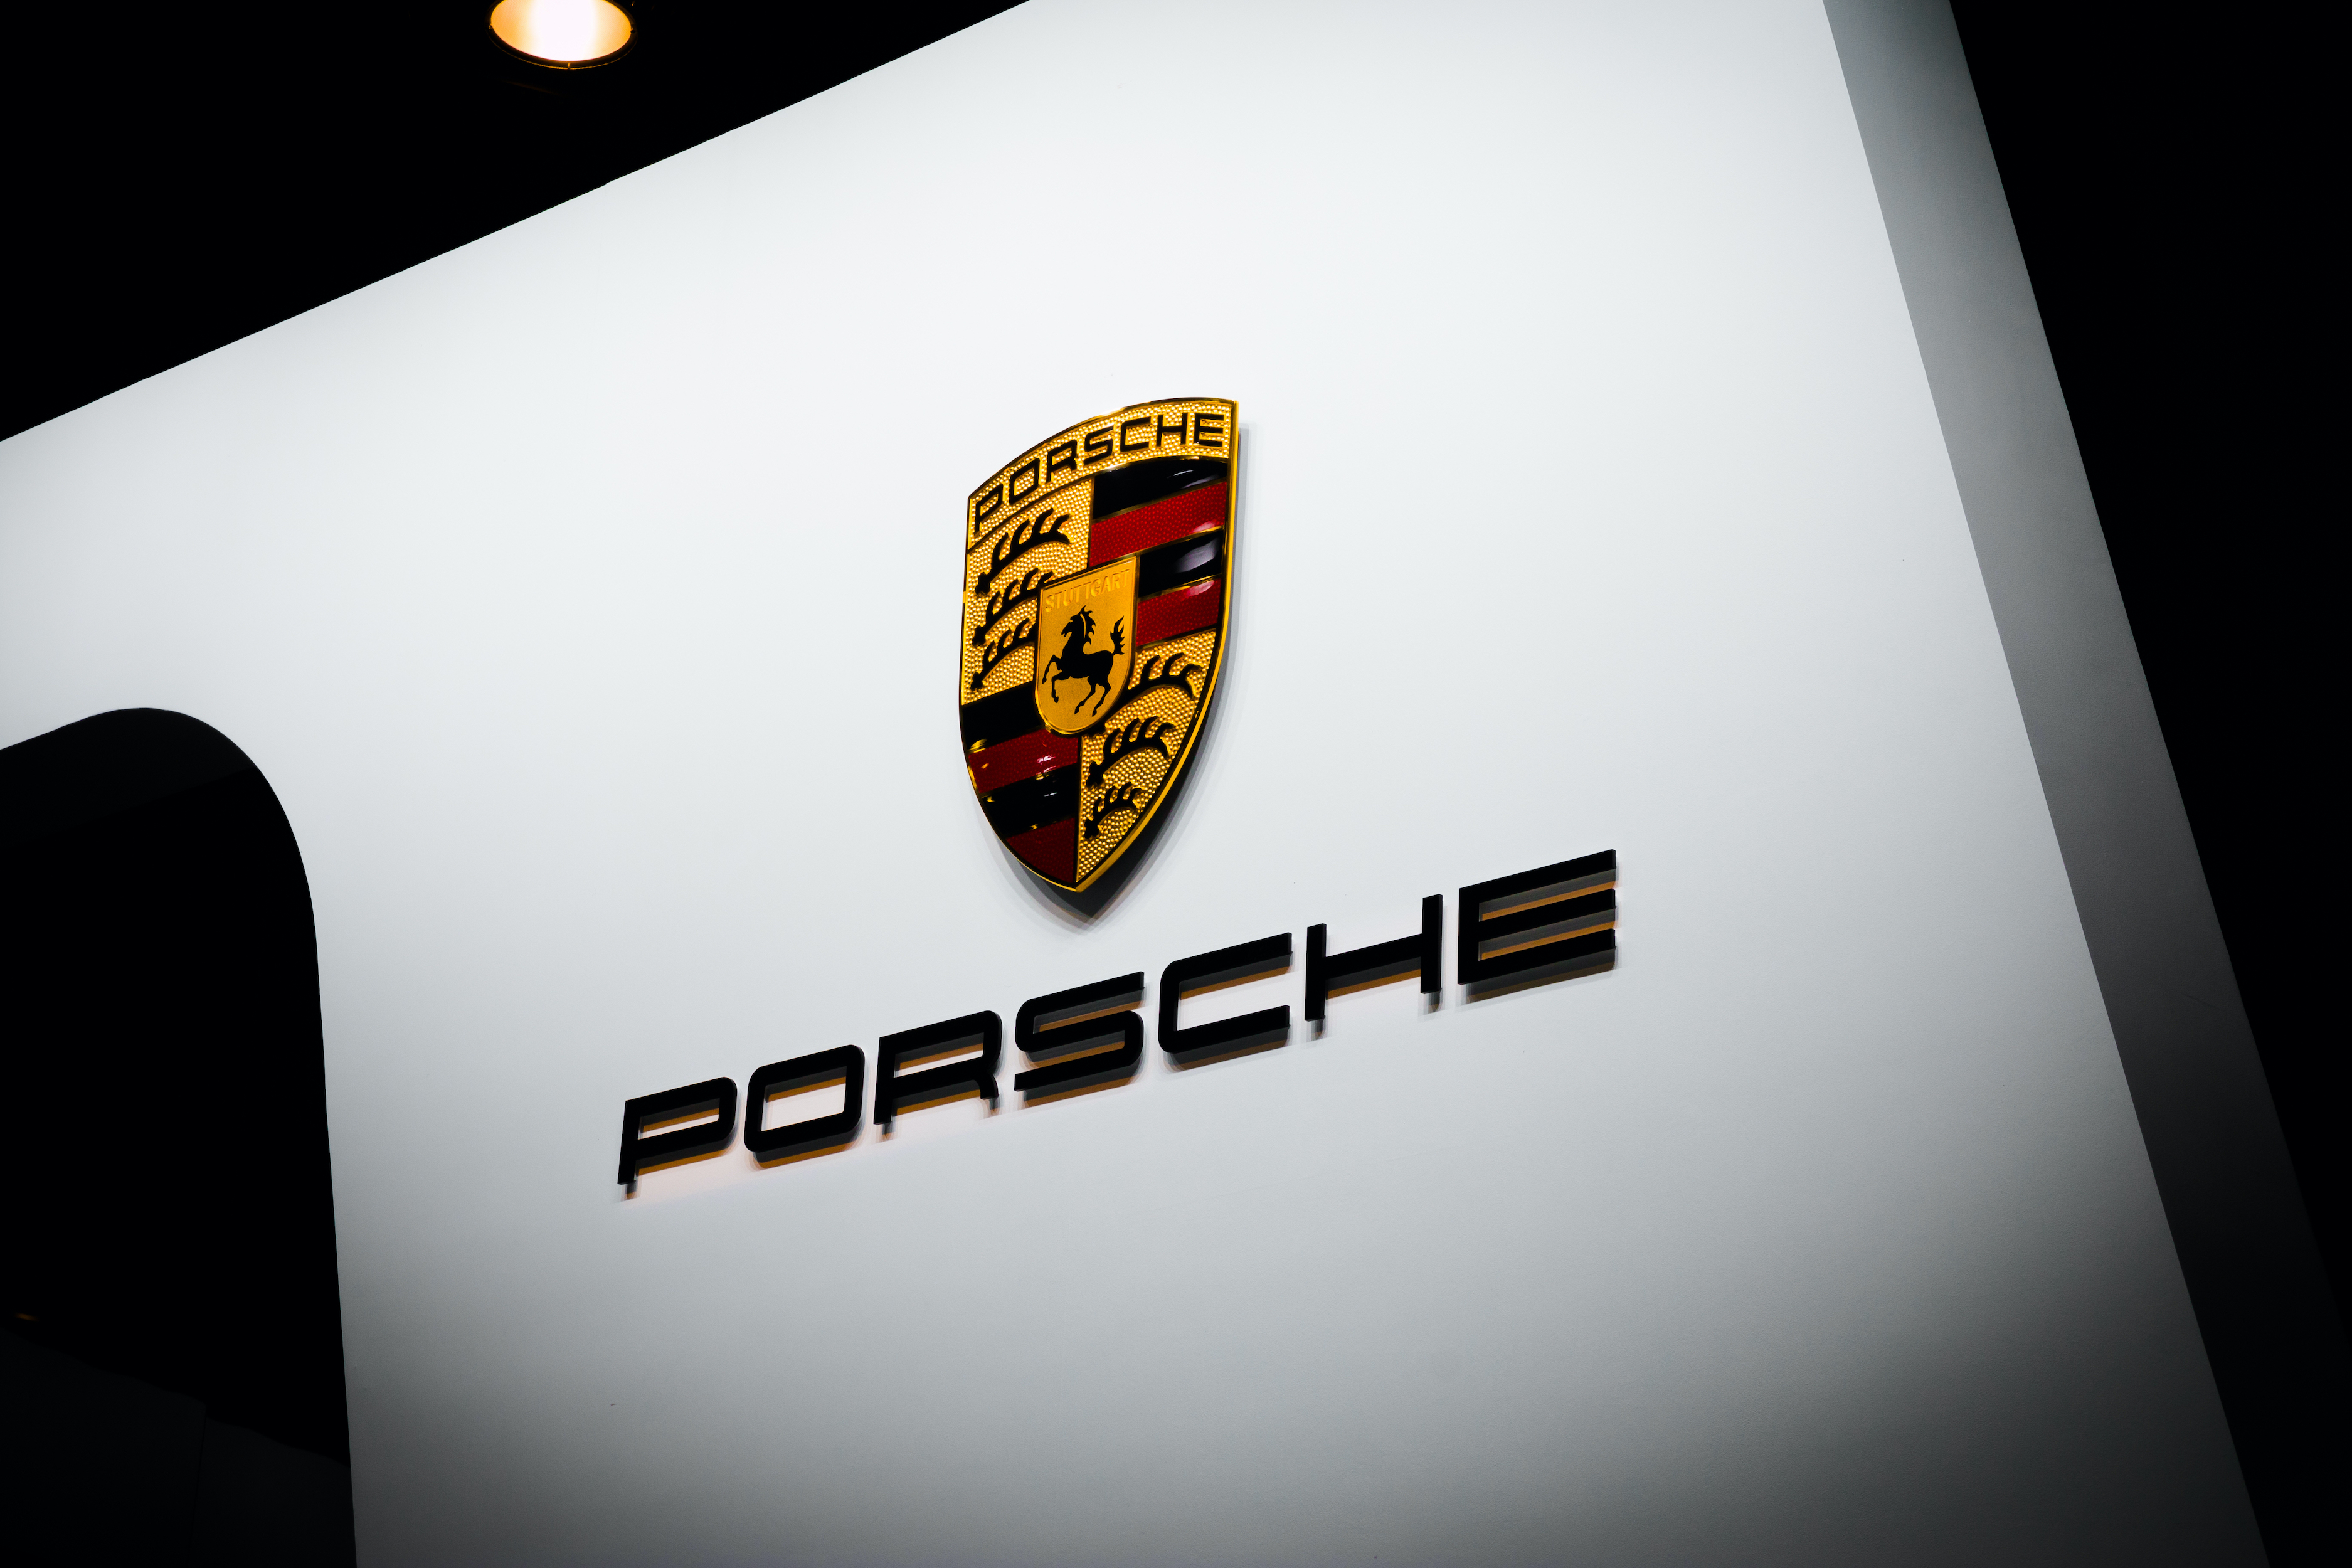 Brand Finance Luxury & Premium 50 2023 led by Porsche again